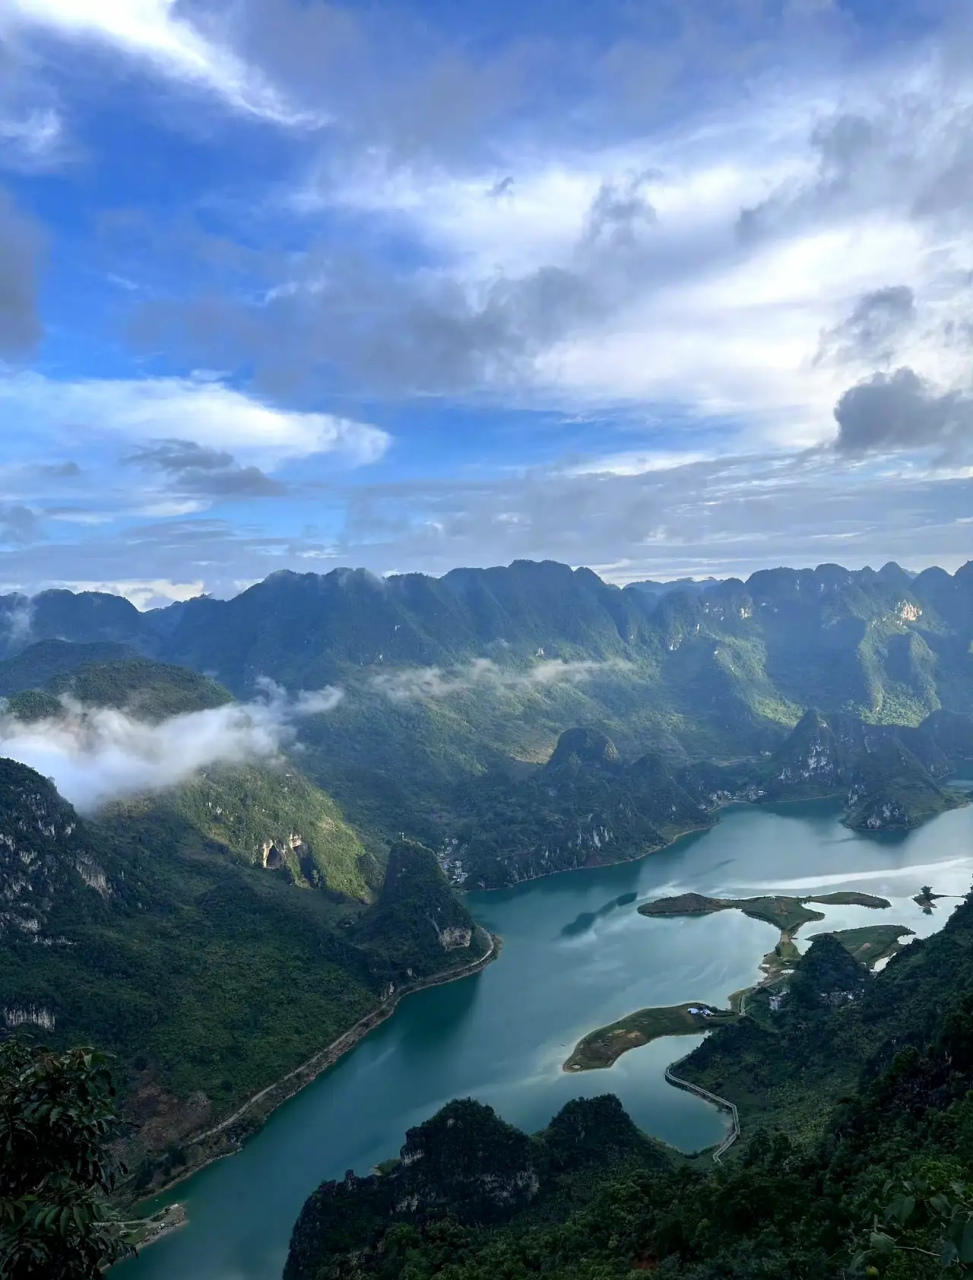 凌云浩坤湖风景区图片